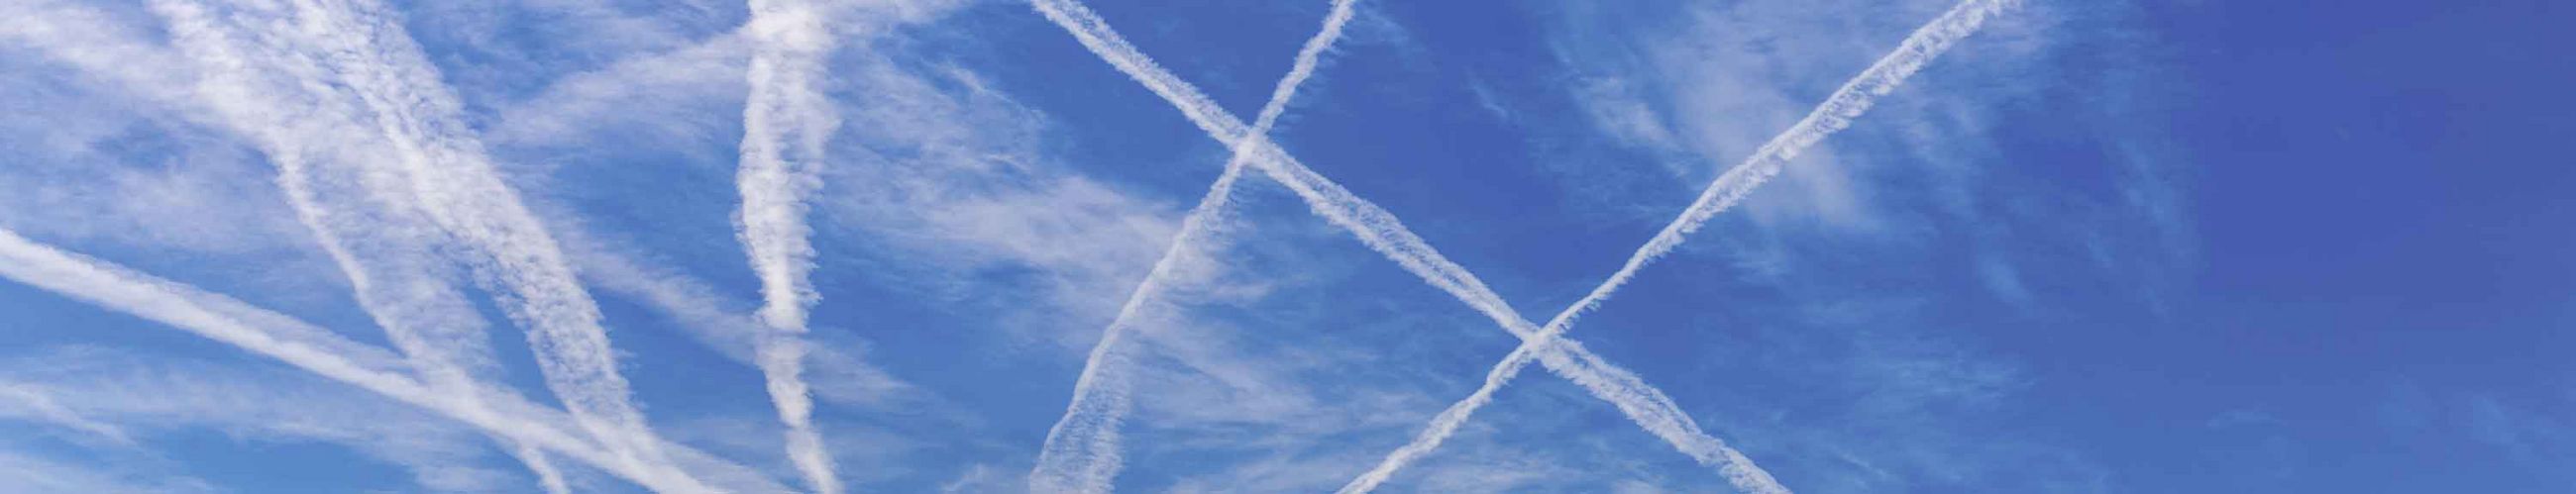 Verschiedene sich überschneidende Kondensstreifen von Flugzeugen sind am blauen Himmel zu sehen.